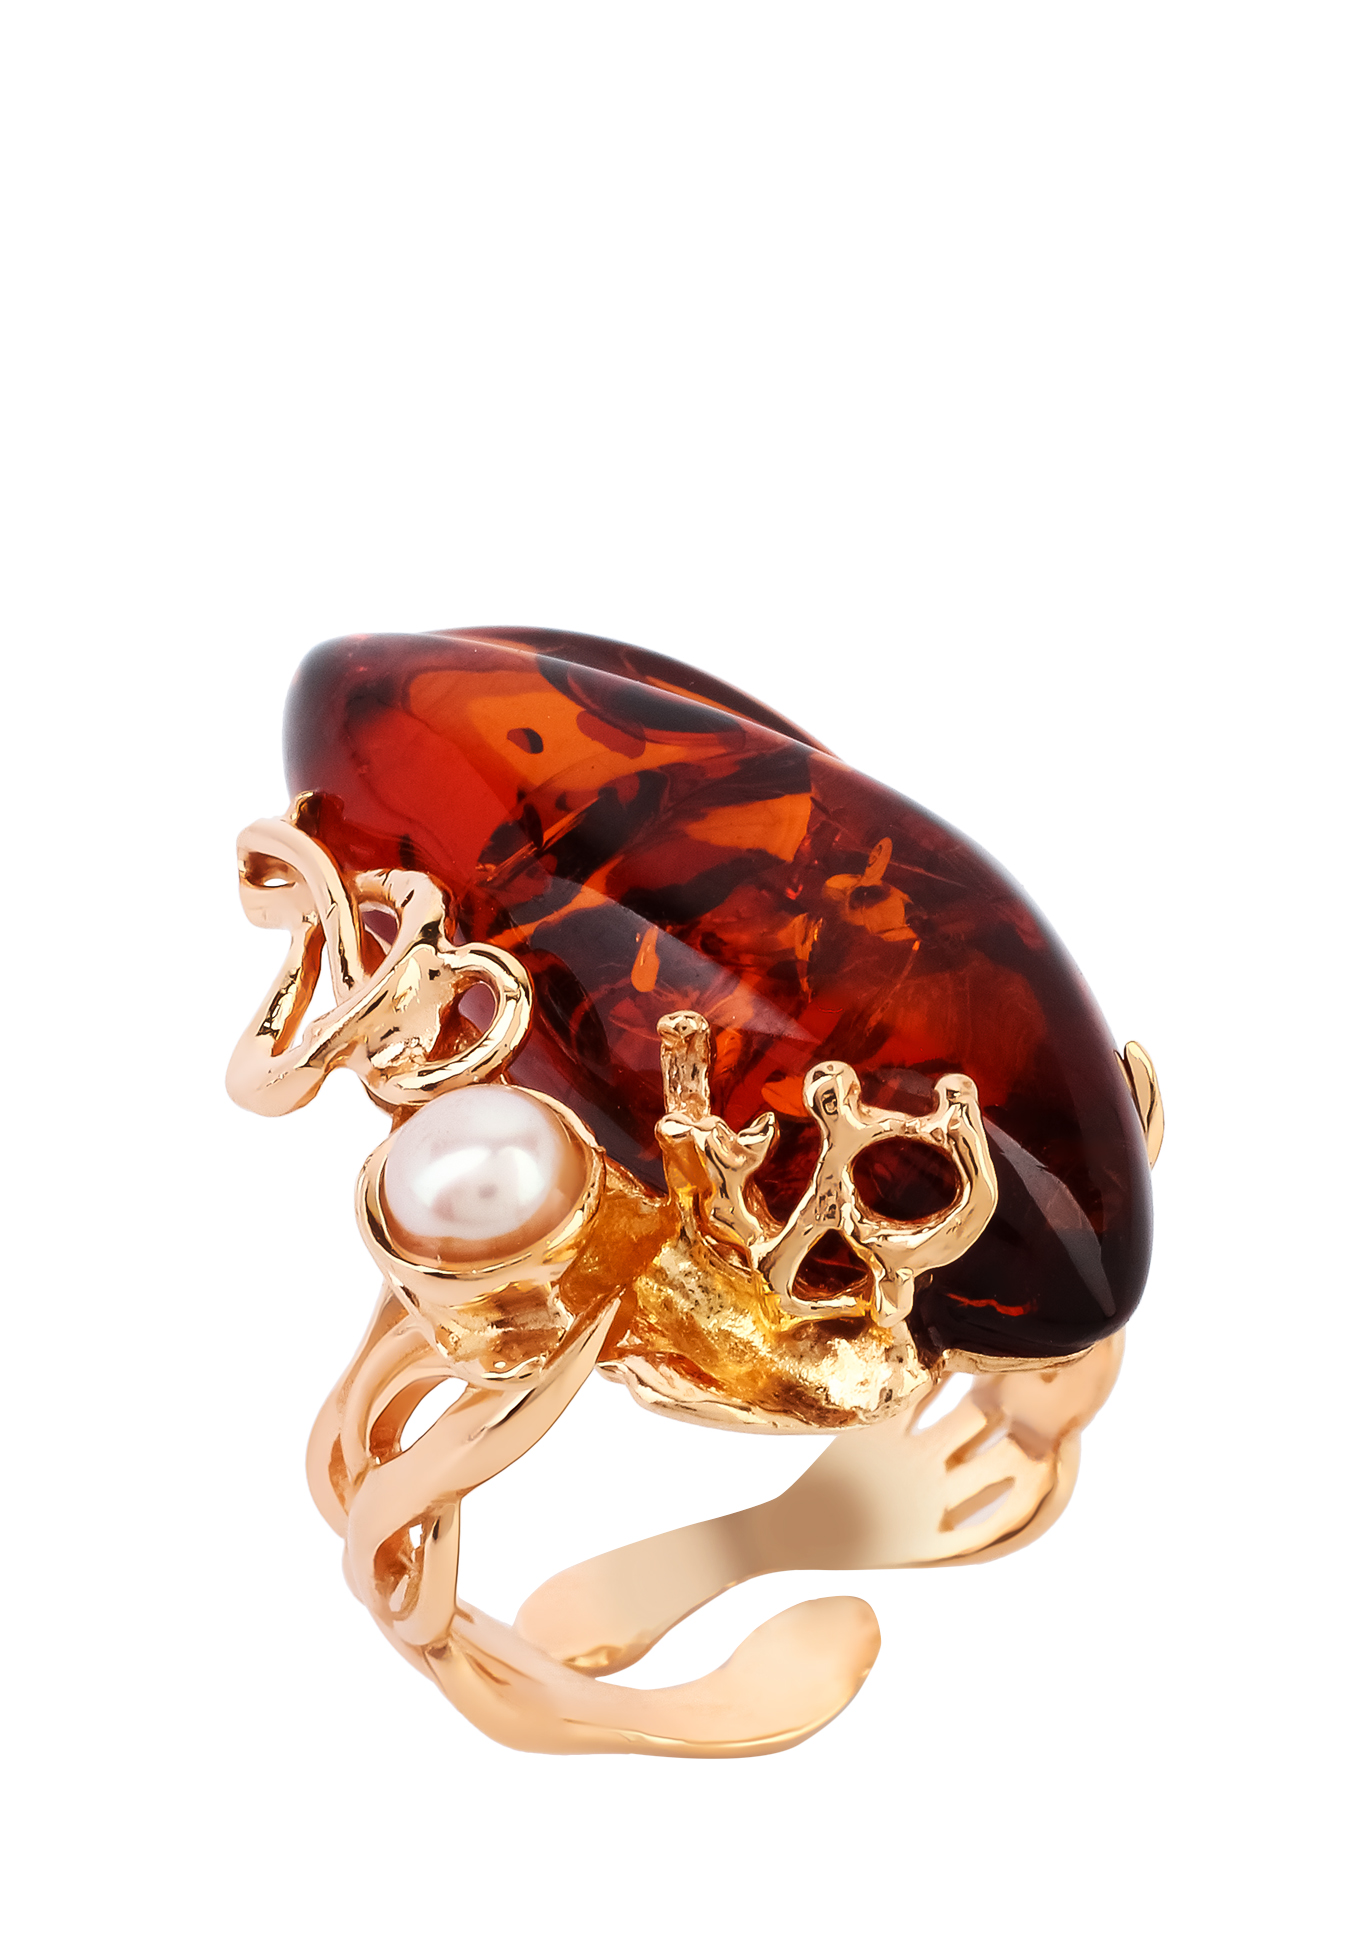 Кольцо серебряное "Чувственная грация" Янтарная волна, цвет красный перстень - фото 1